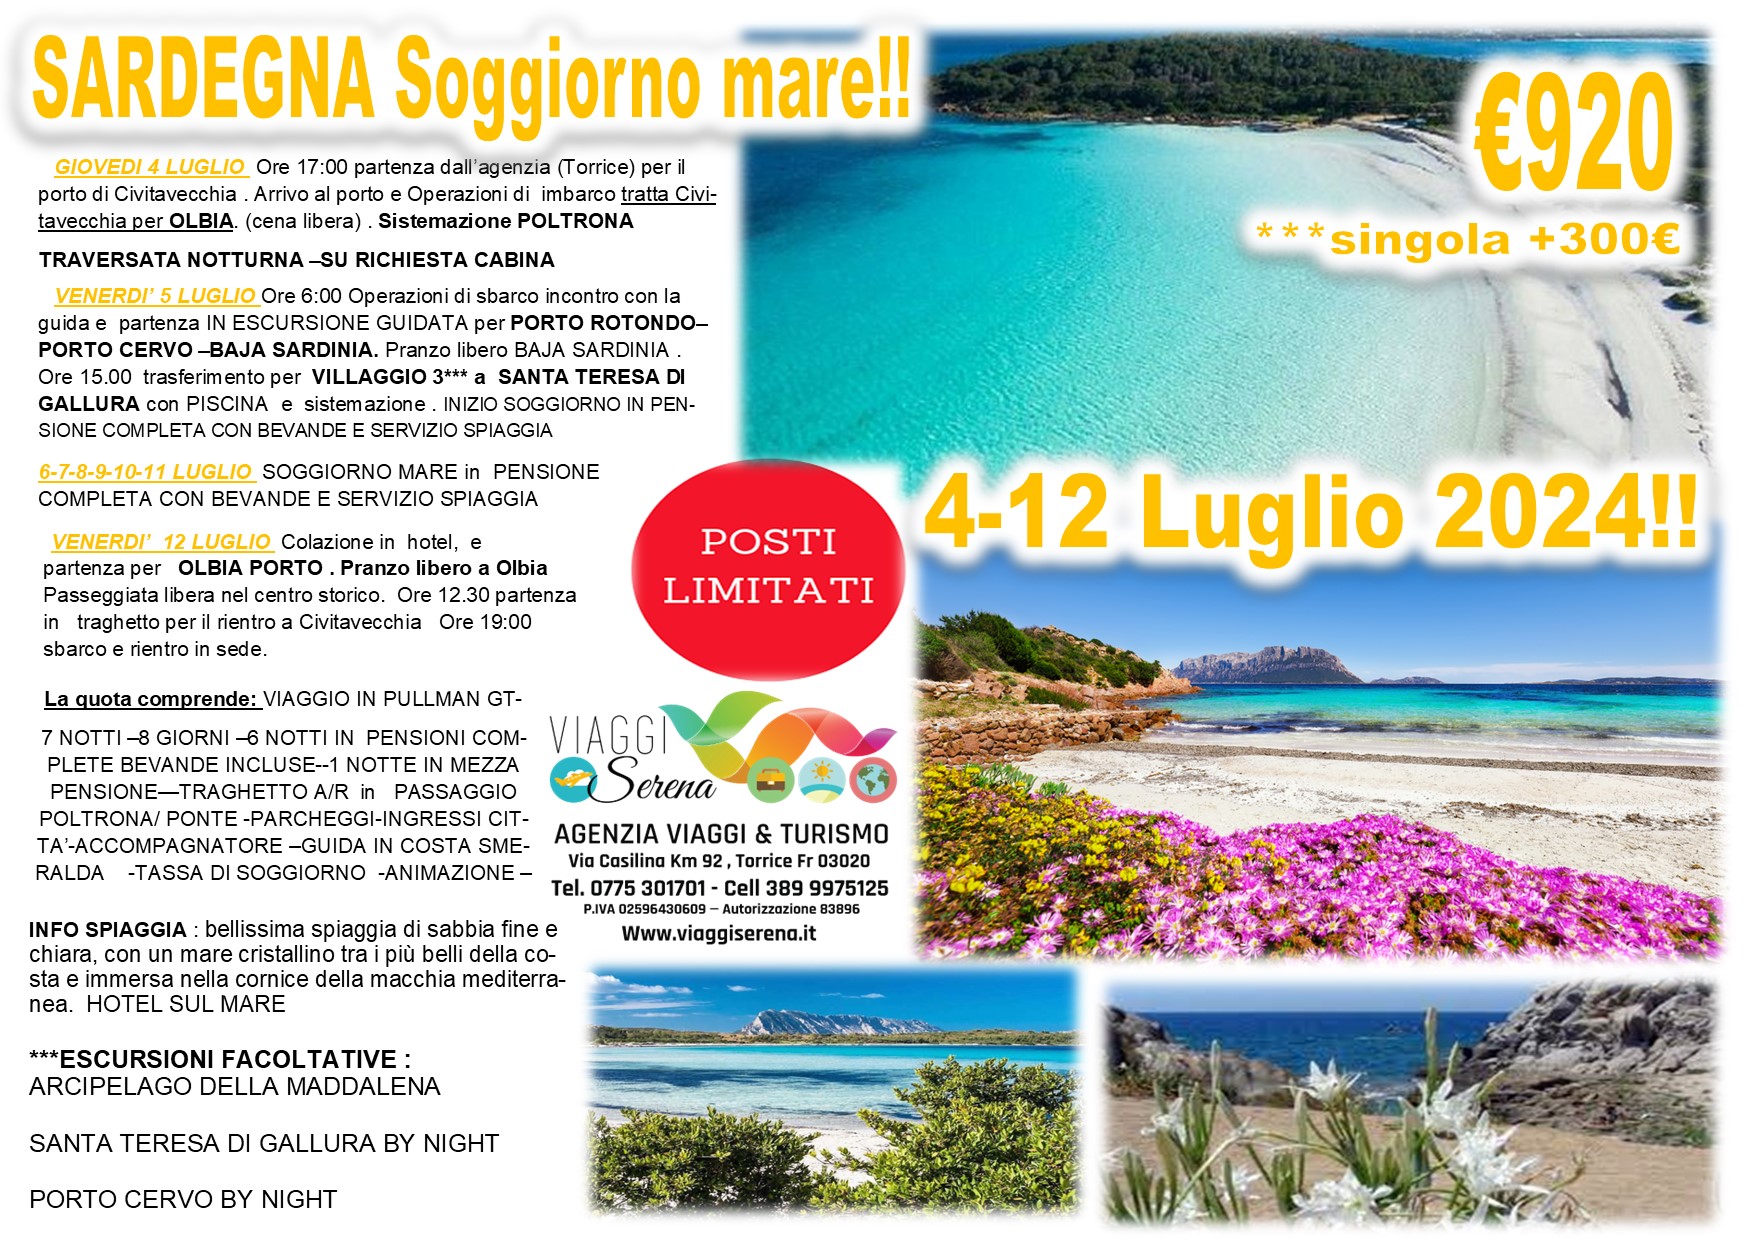 Viaggi di gruppo: Sardegna Villaggio mare 4-12 Luglio 2024  €920,00